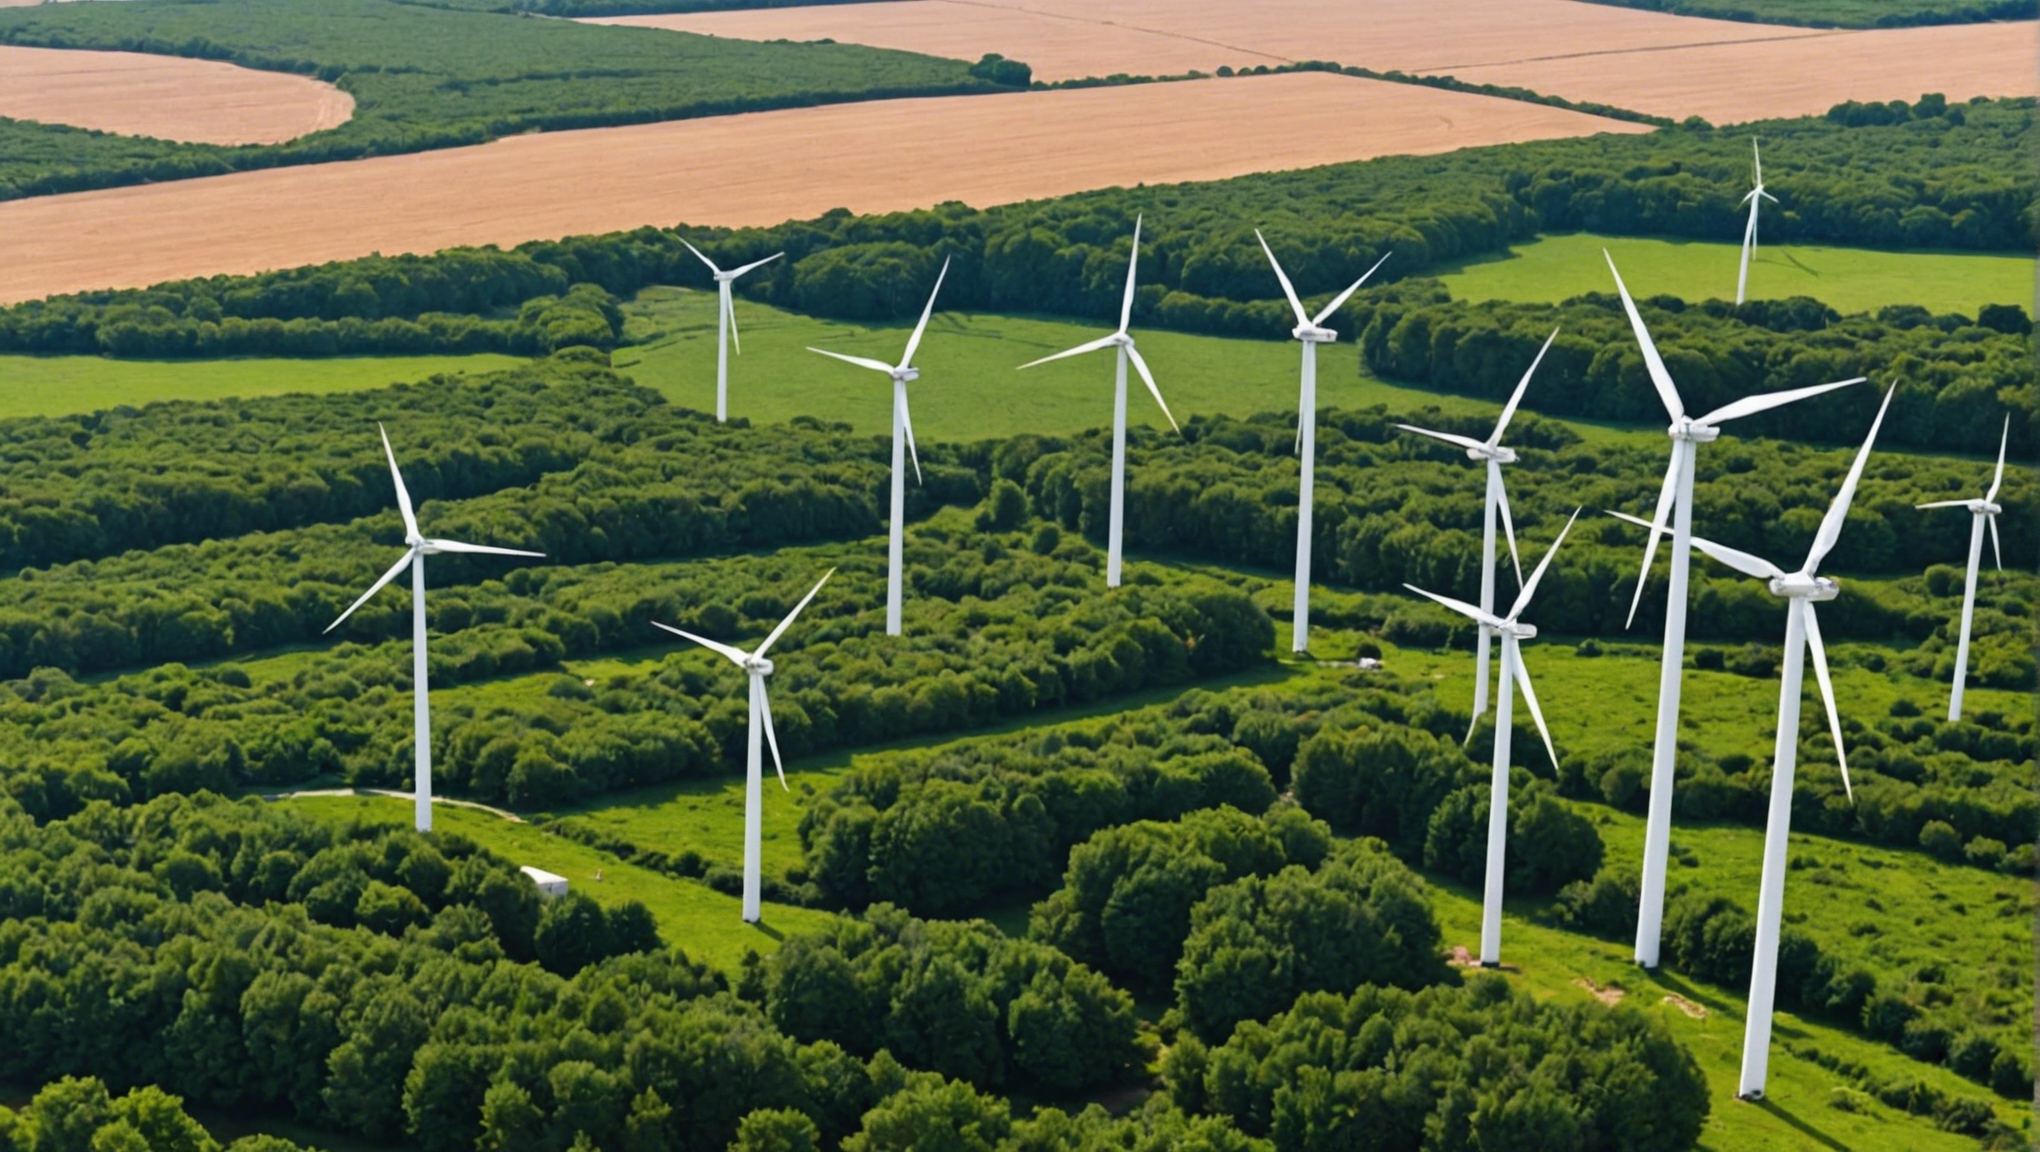 découvrez comment les éoliennes de noirmoutier révolutionnent l'énergie verte et contribuent à la transition énergétique avec cette analyse approfondie.